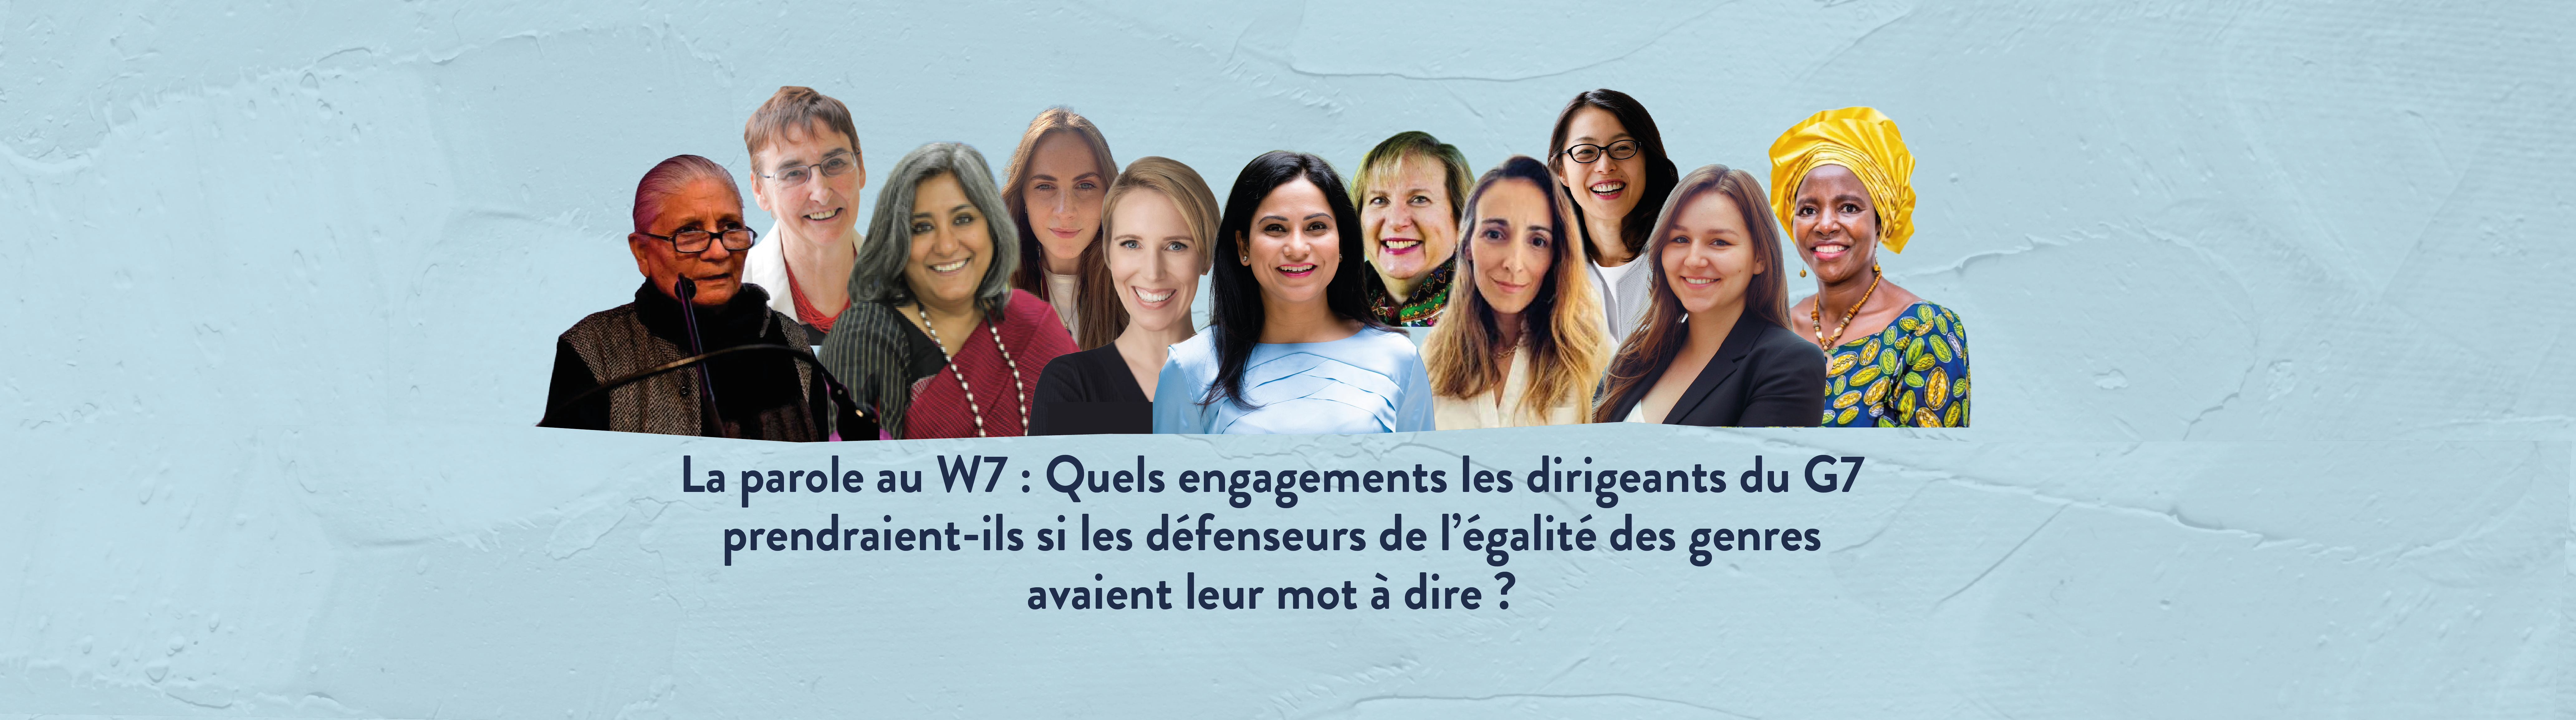 La parole au W7 : Quels engagements les dirigeants du G7 prendraient-ils si les défenseurs de l’égalité des genres avaient leur mot à dire ?  